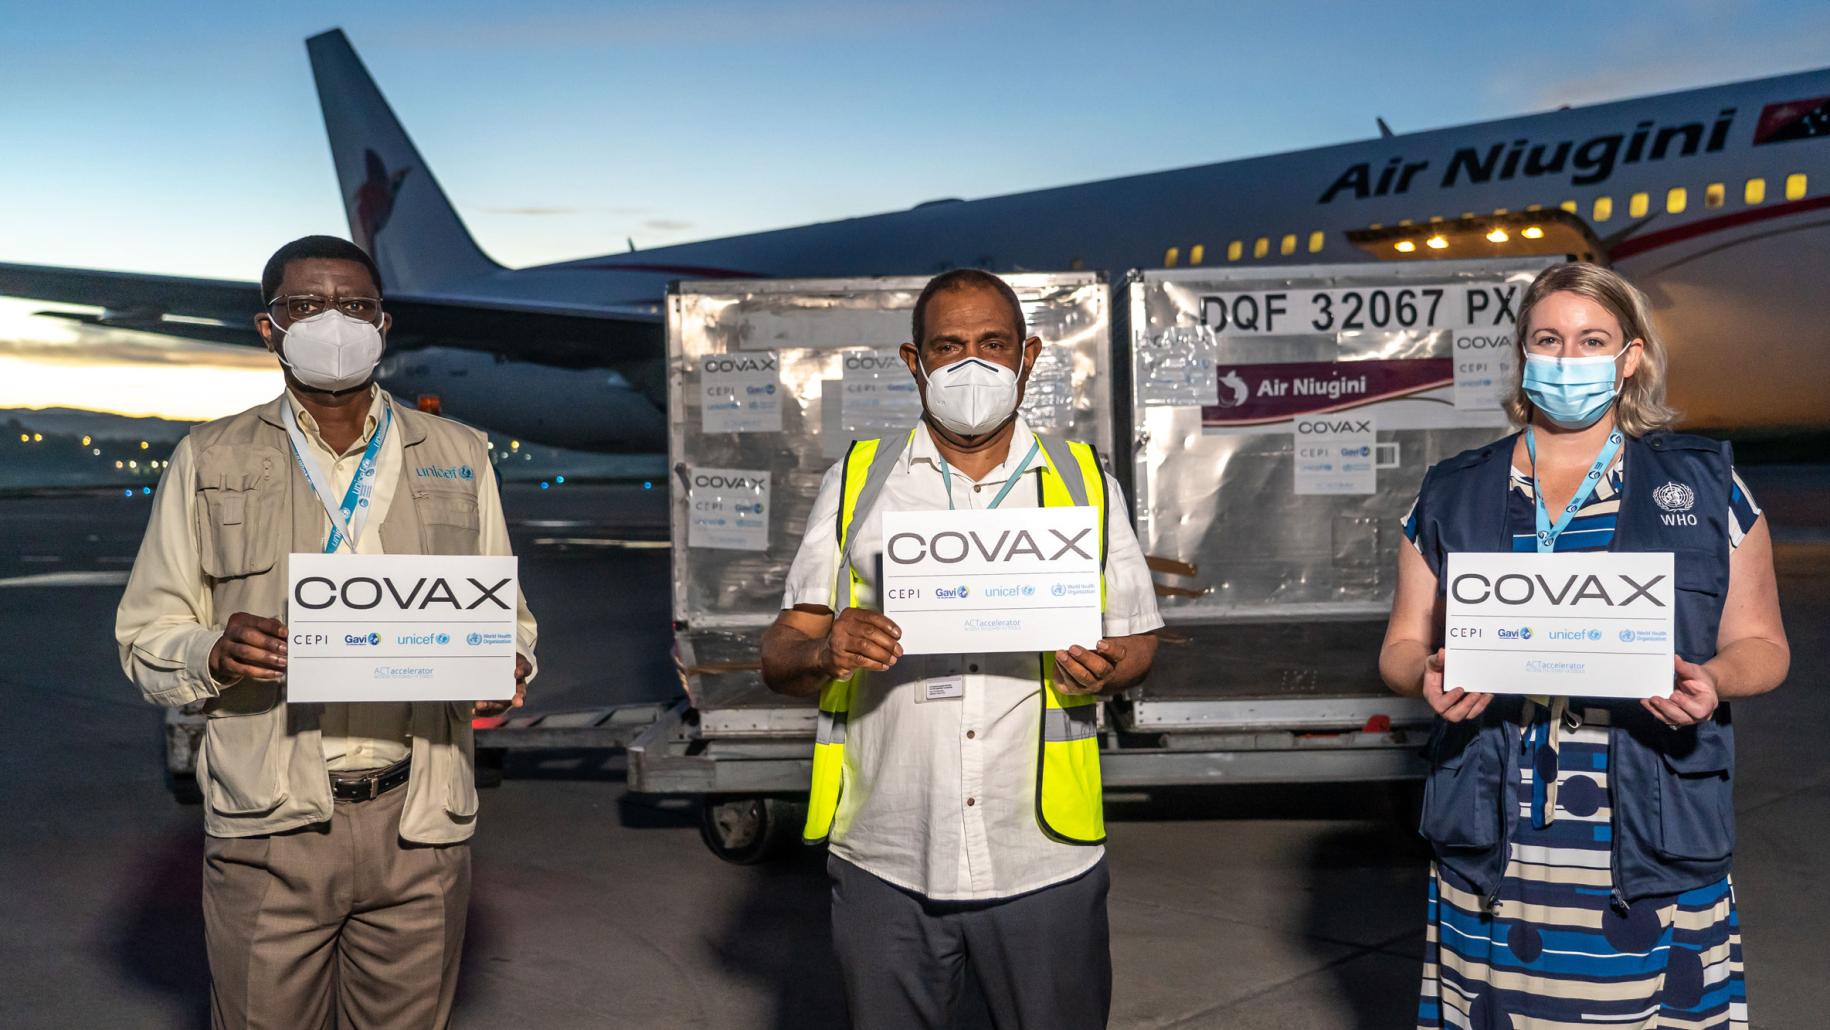 Deux hommes et une femme portant des masques de protection respiratoire et tenant des panneaux de l'initiative COVAX se tiennent debout, face caméra, sur le tarmac d'un aéroport où vient d'atterrir un avion chargé de vaccins anti-COVID-19.